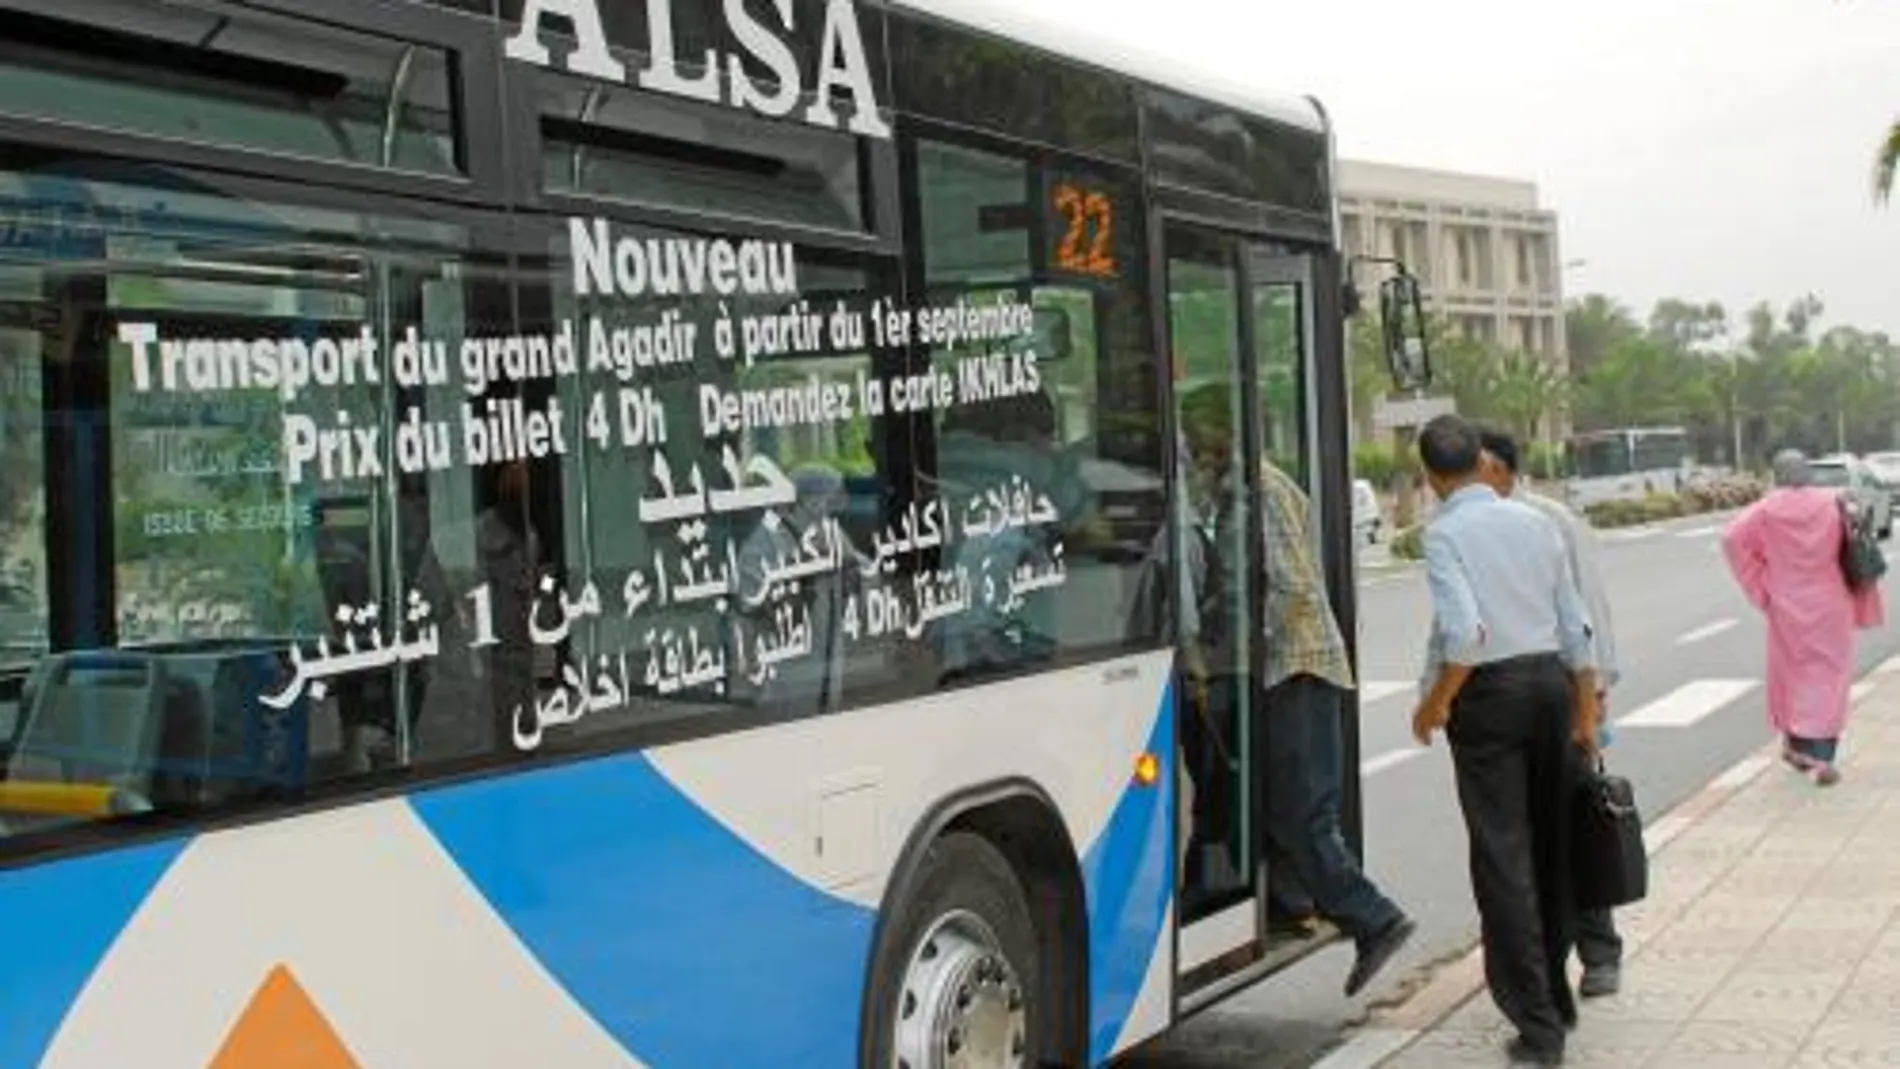 Alsa sigue su expansión por Marruecos donde duplicará su presencia en 2011